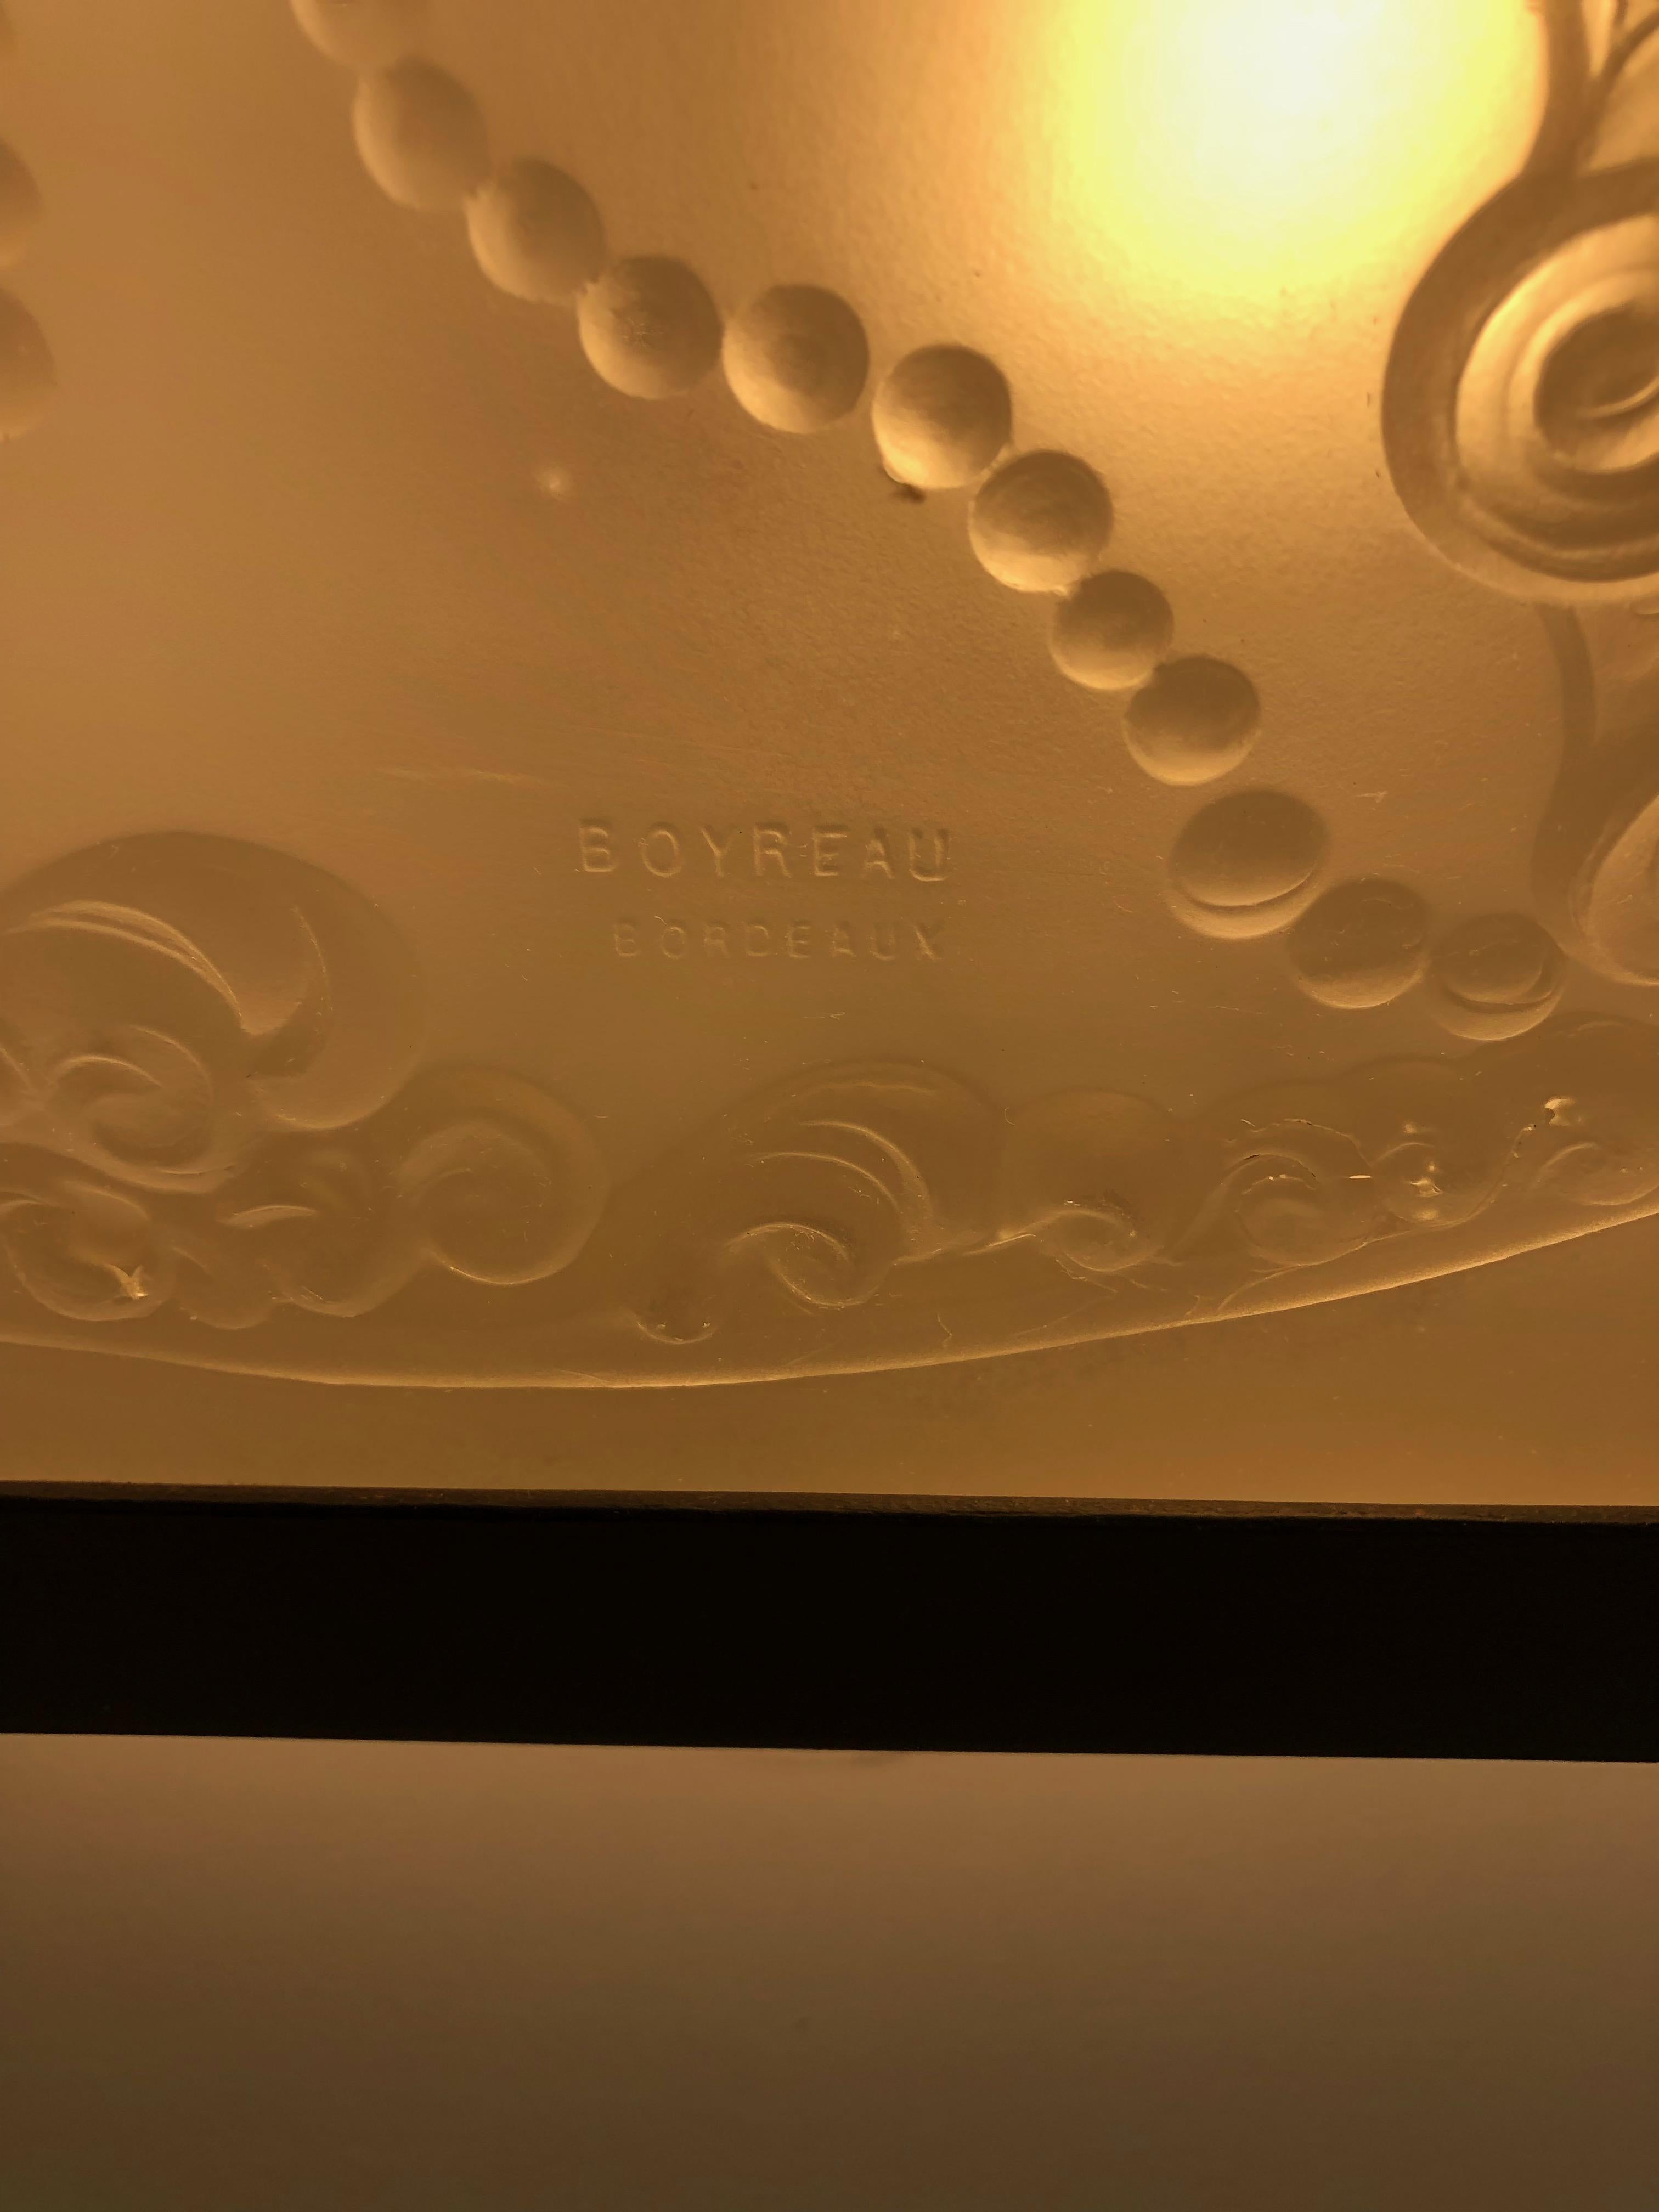 Art Deco Ceiling Lamp Signed Boyreau Bordeaux For Sale 2